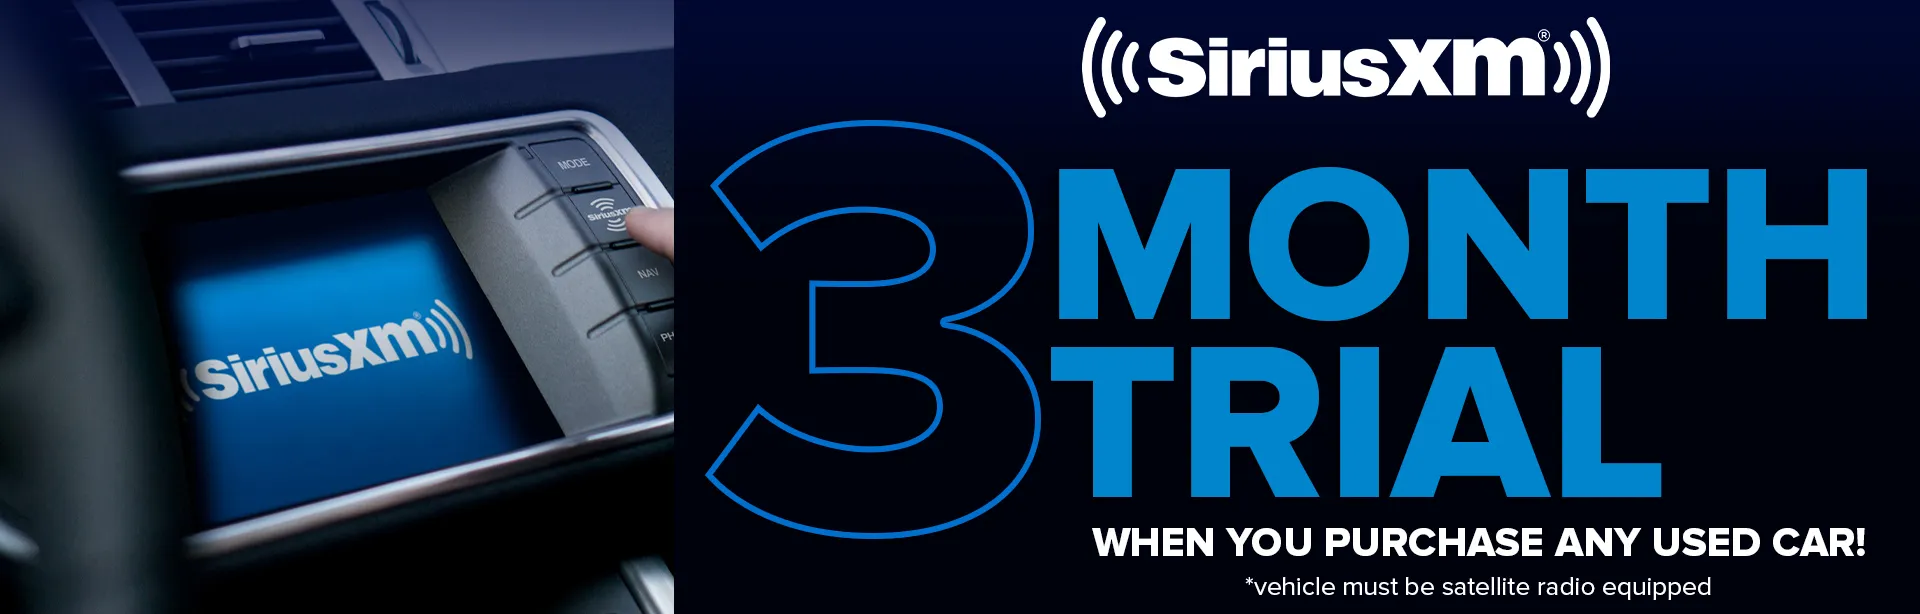 Sirius XM # Month Trial